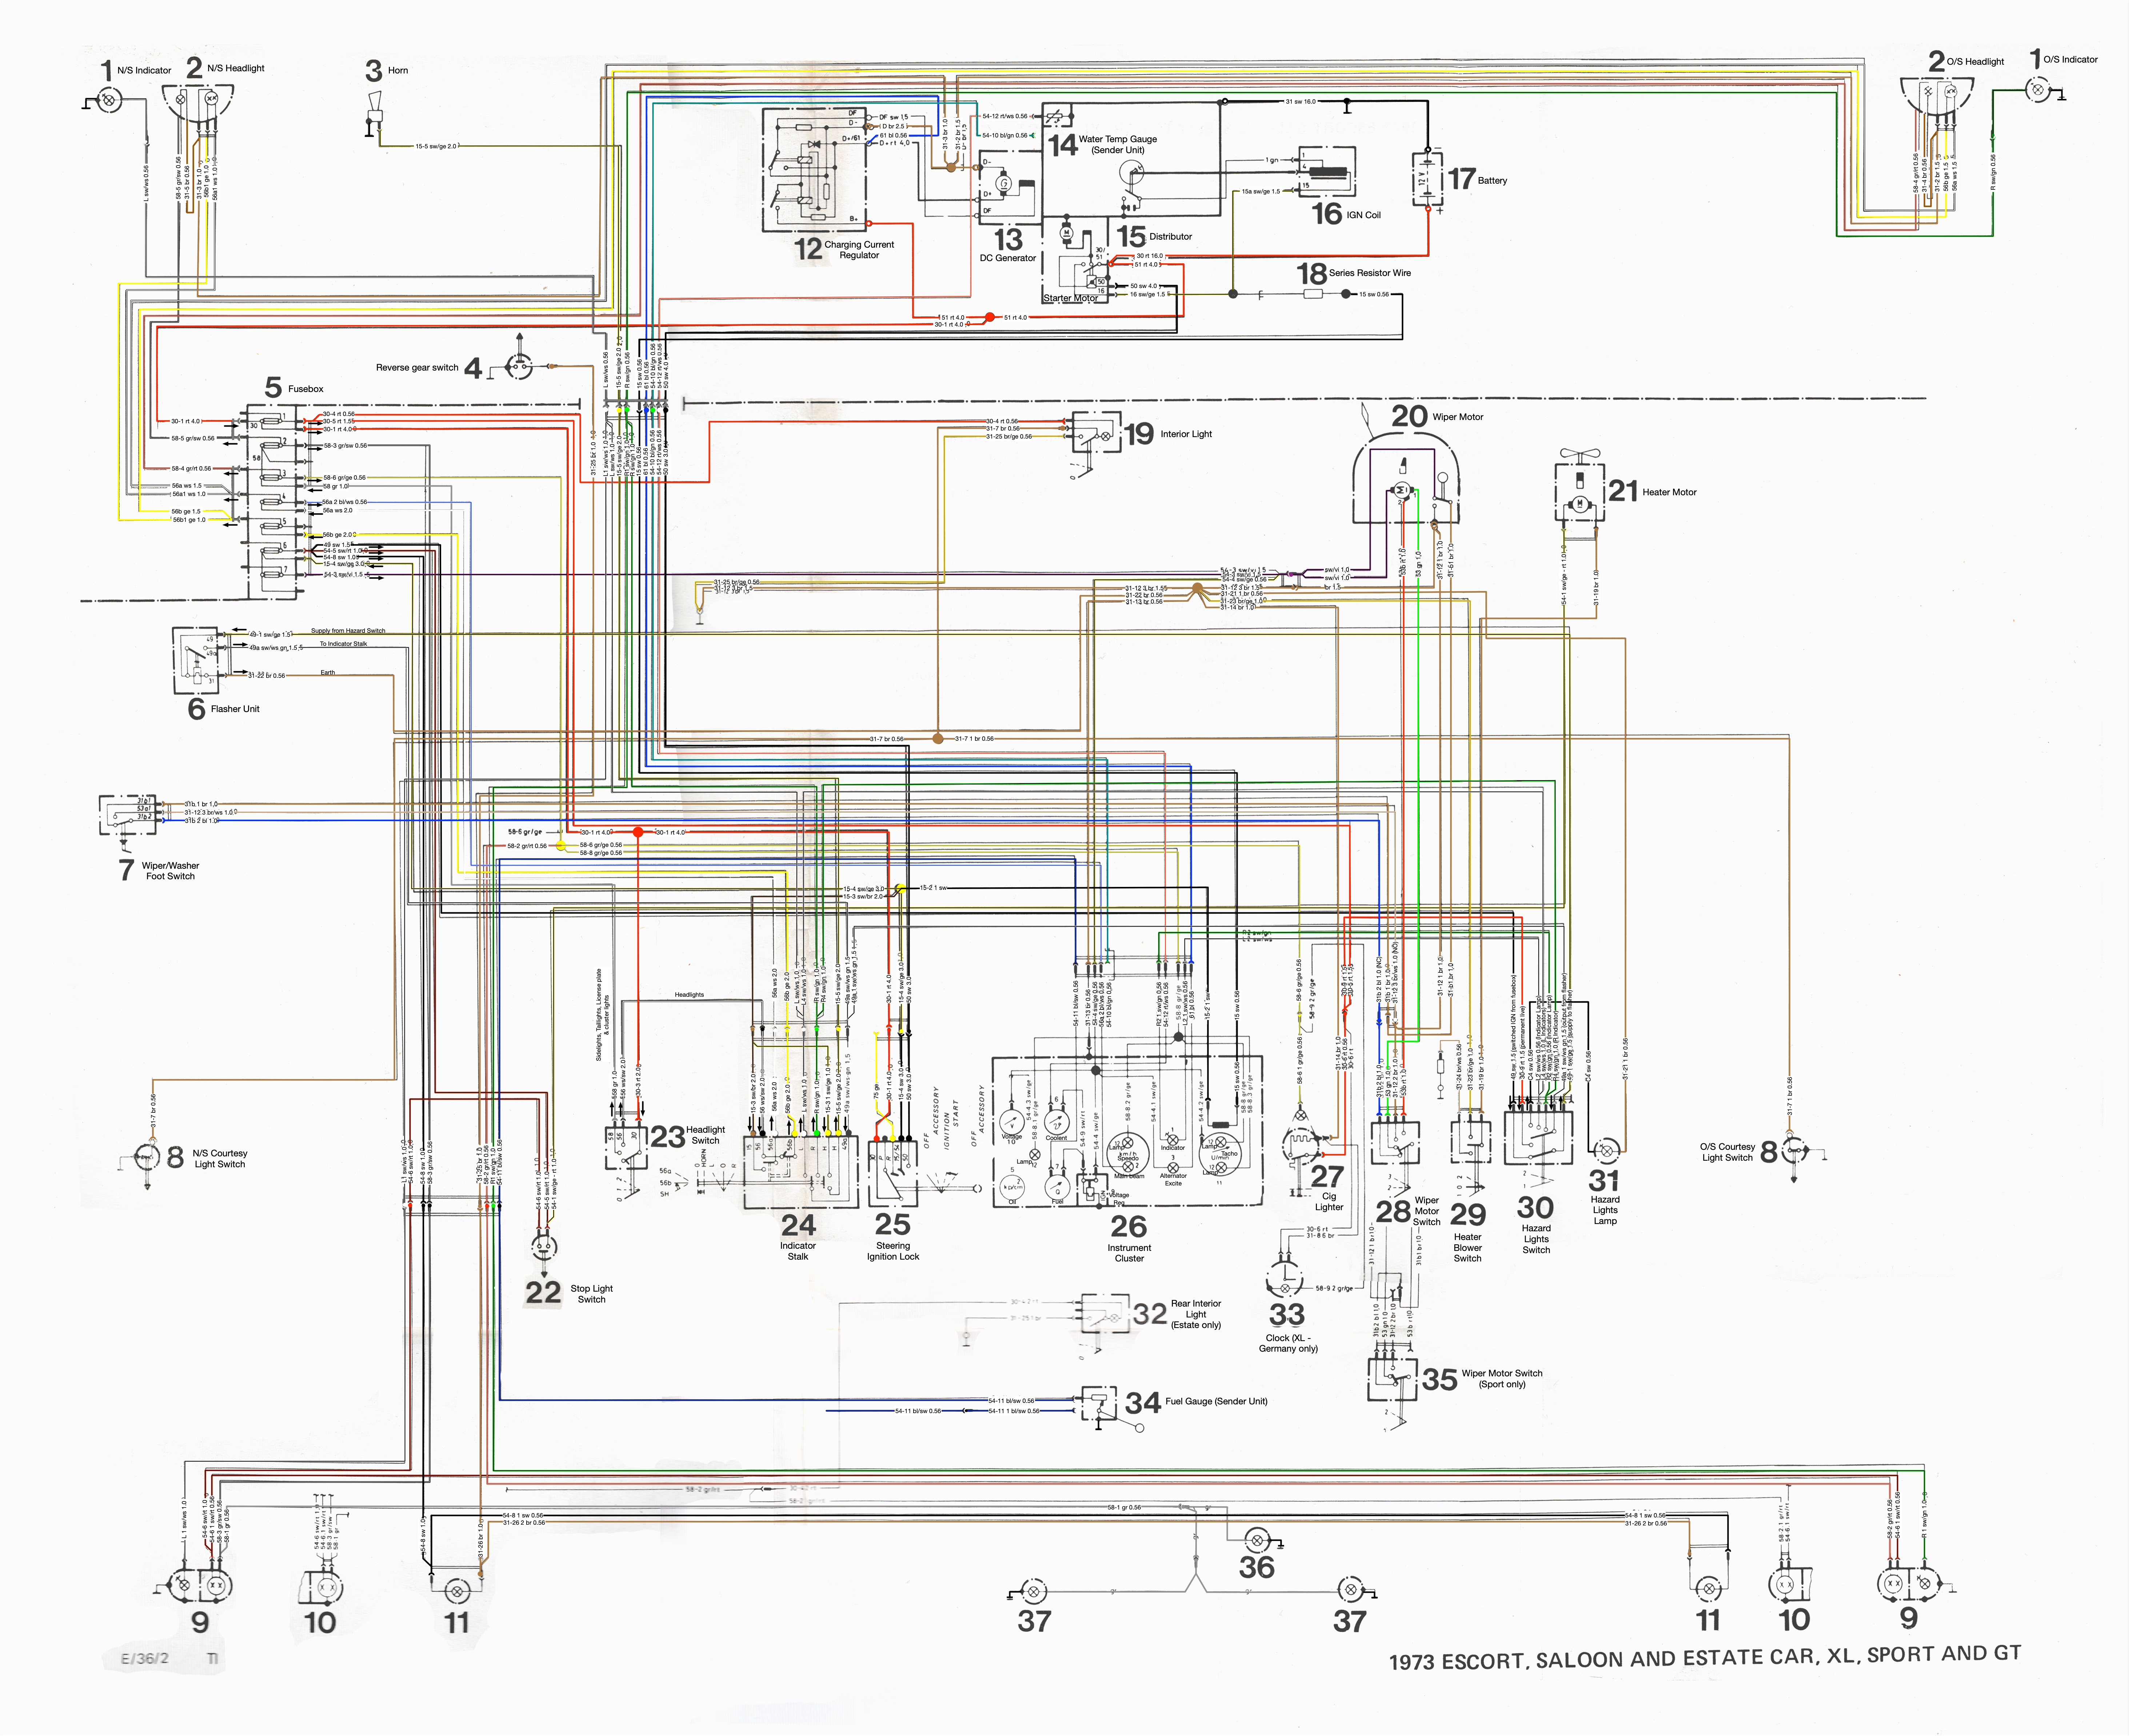 mk1 escort rhd colour wiring diagram u2013 bytes u0026boltsmk1 escort rhd colour wiring diagram